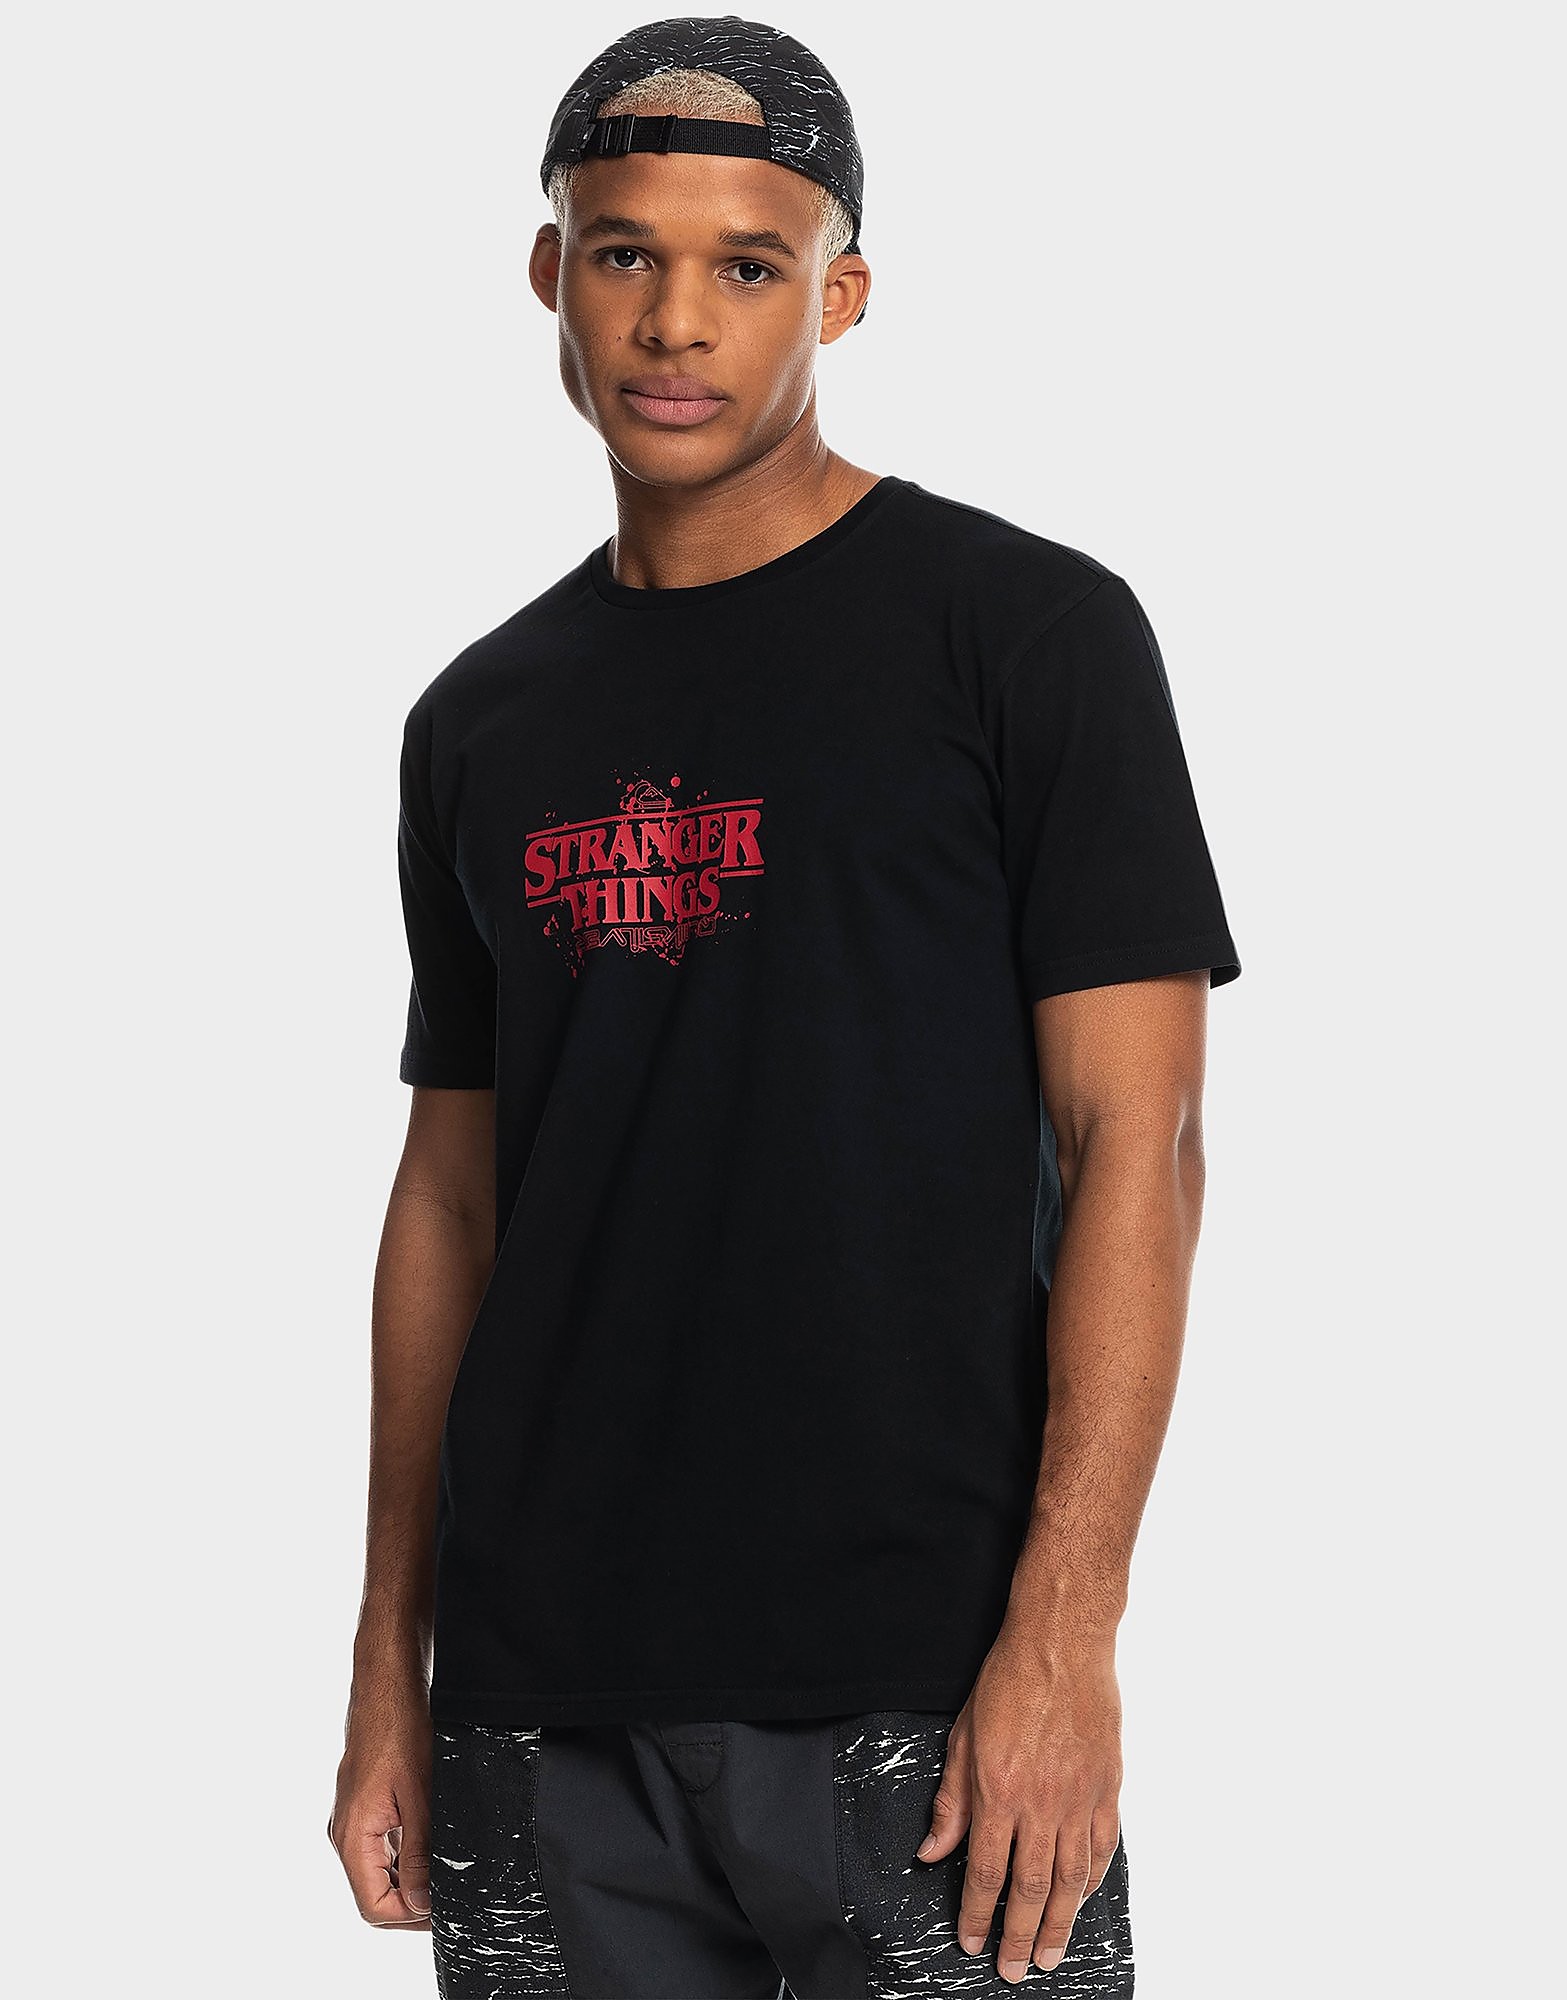 Quiksilver T-Shirt Stranger Things Season - Preto - Mens, Preto